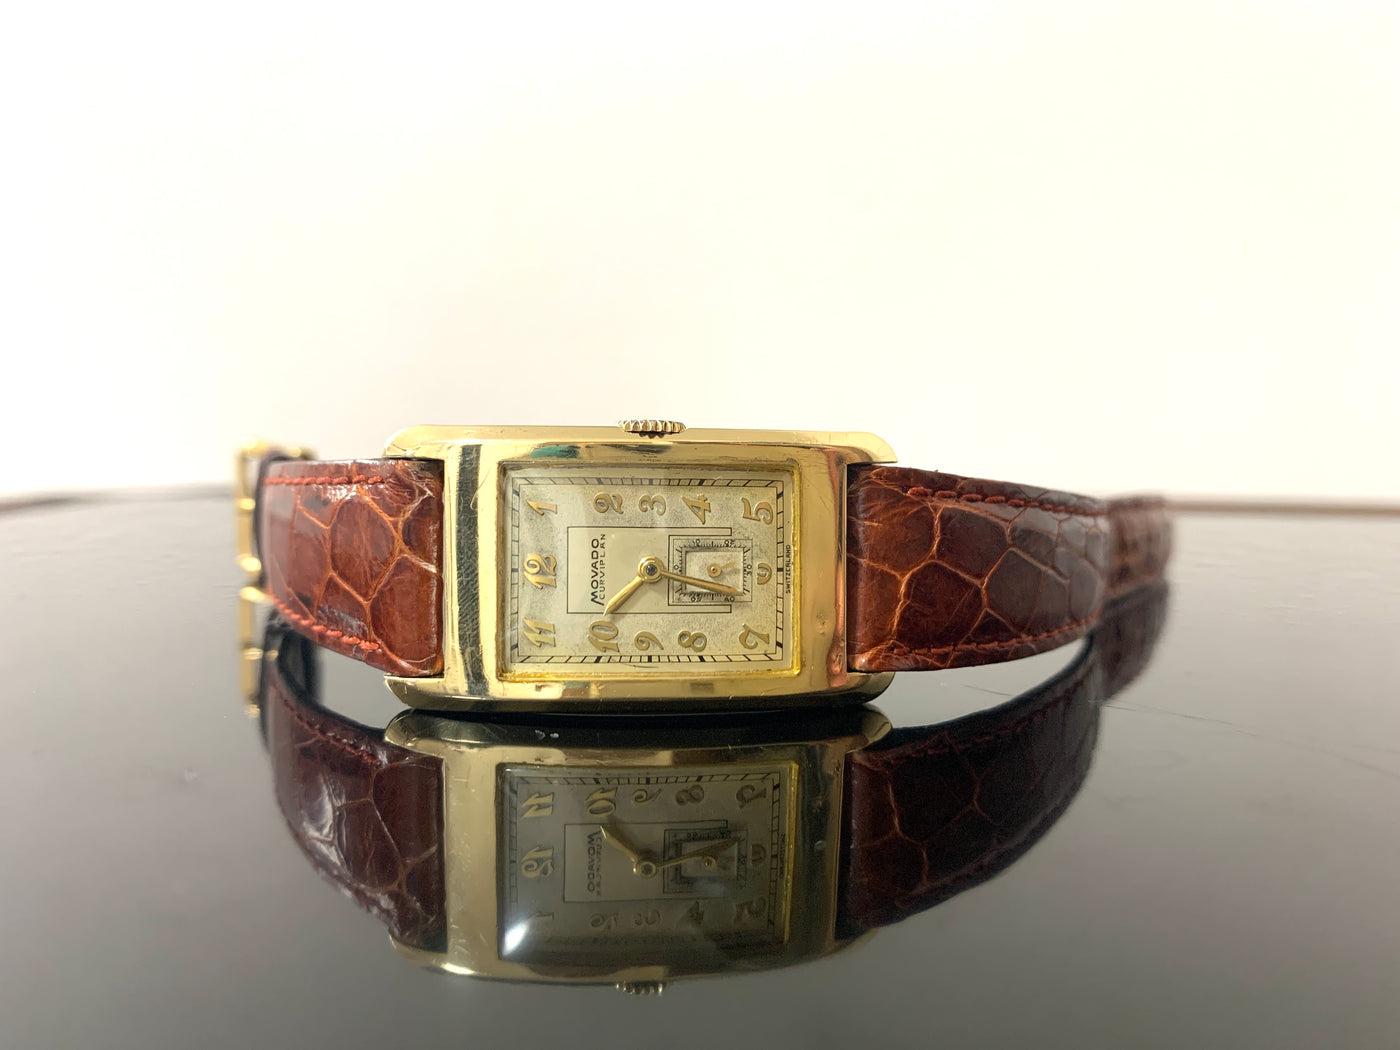 モバード（MOVADO）14k カービプラン『カーヴィプラン』 アールデコ時代 レクタンギュラー型腕時計